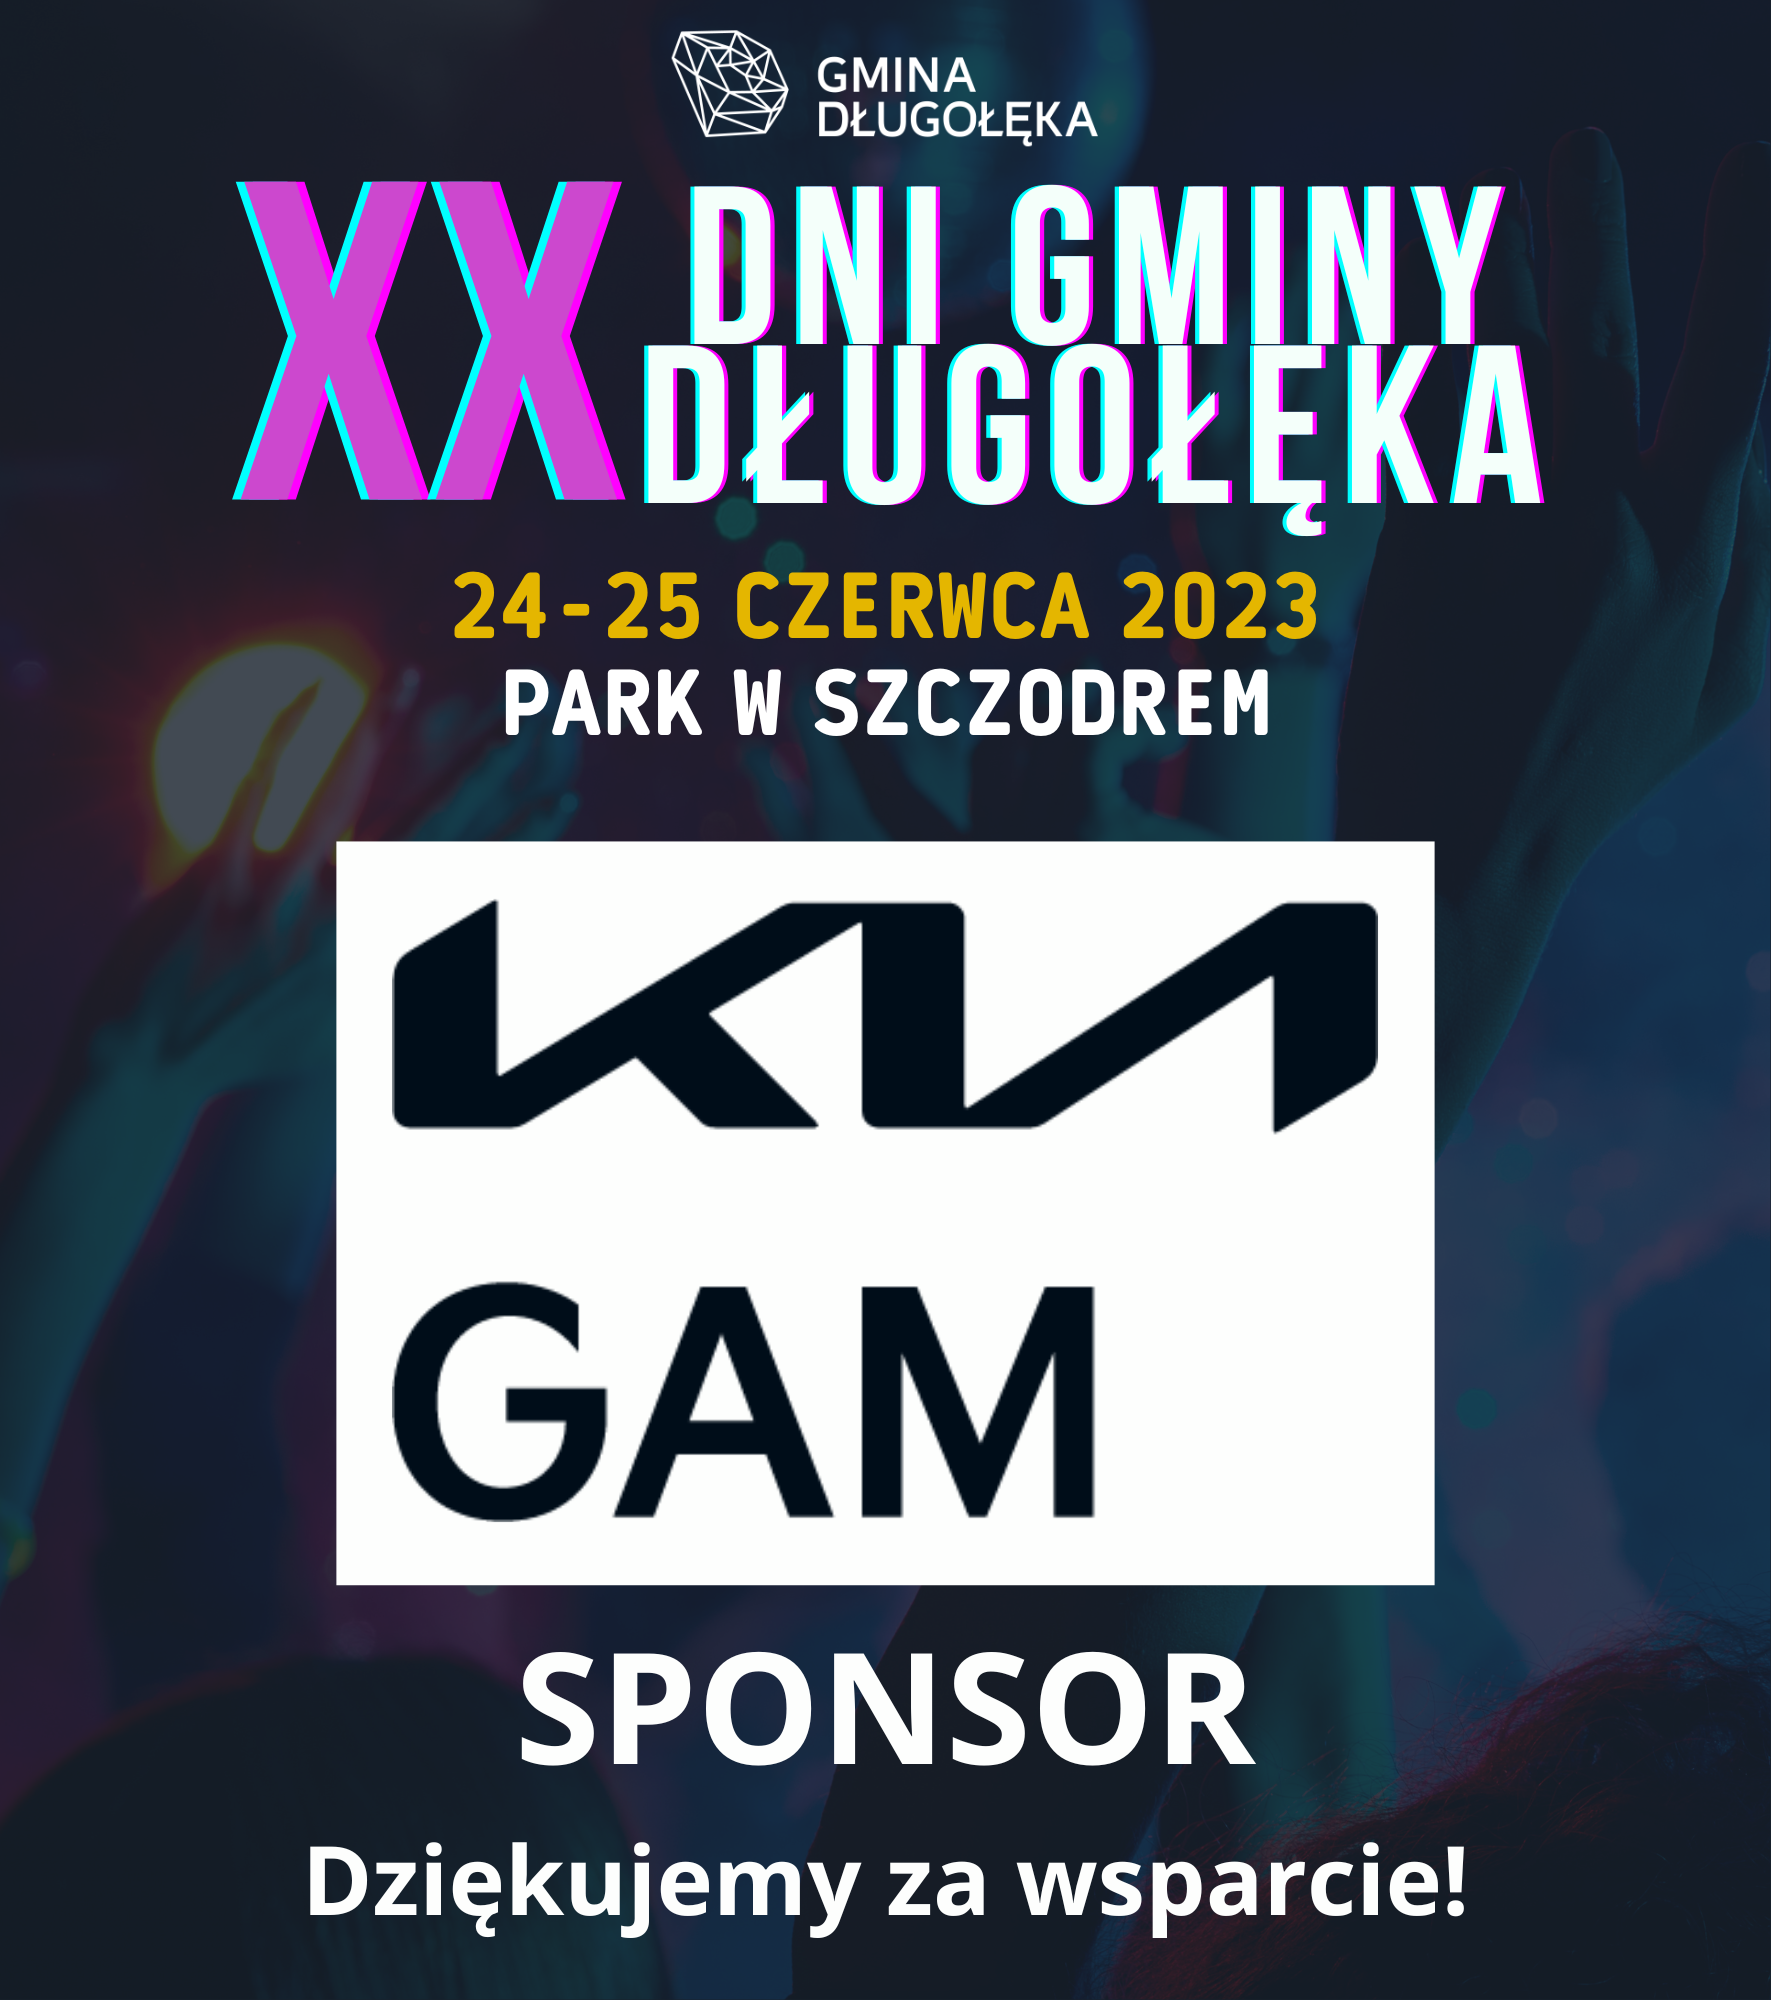 KIA GAM sponsorem XX Dni Gminy Długołęka!